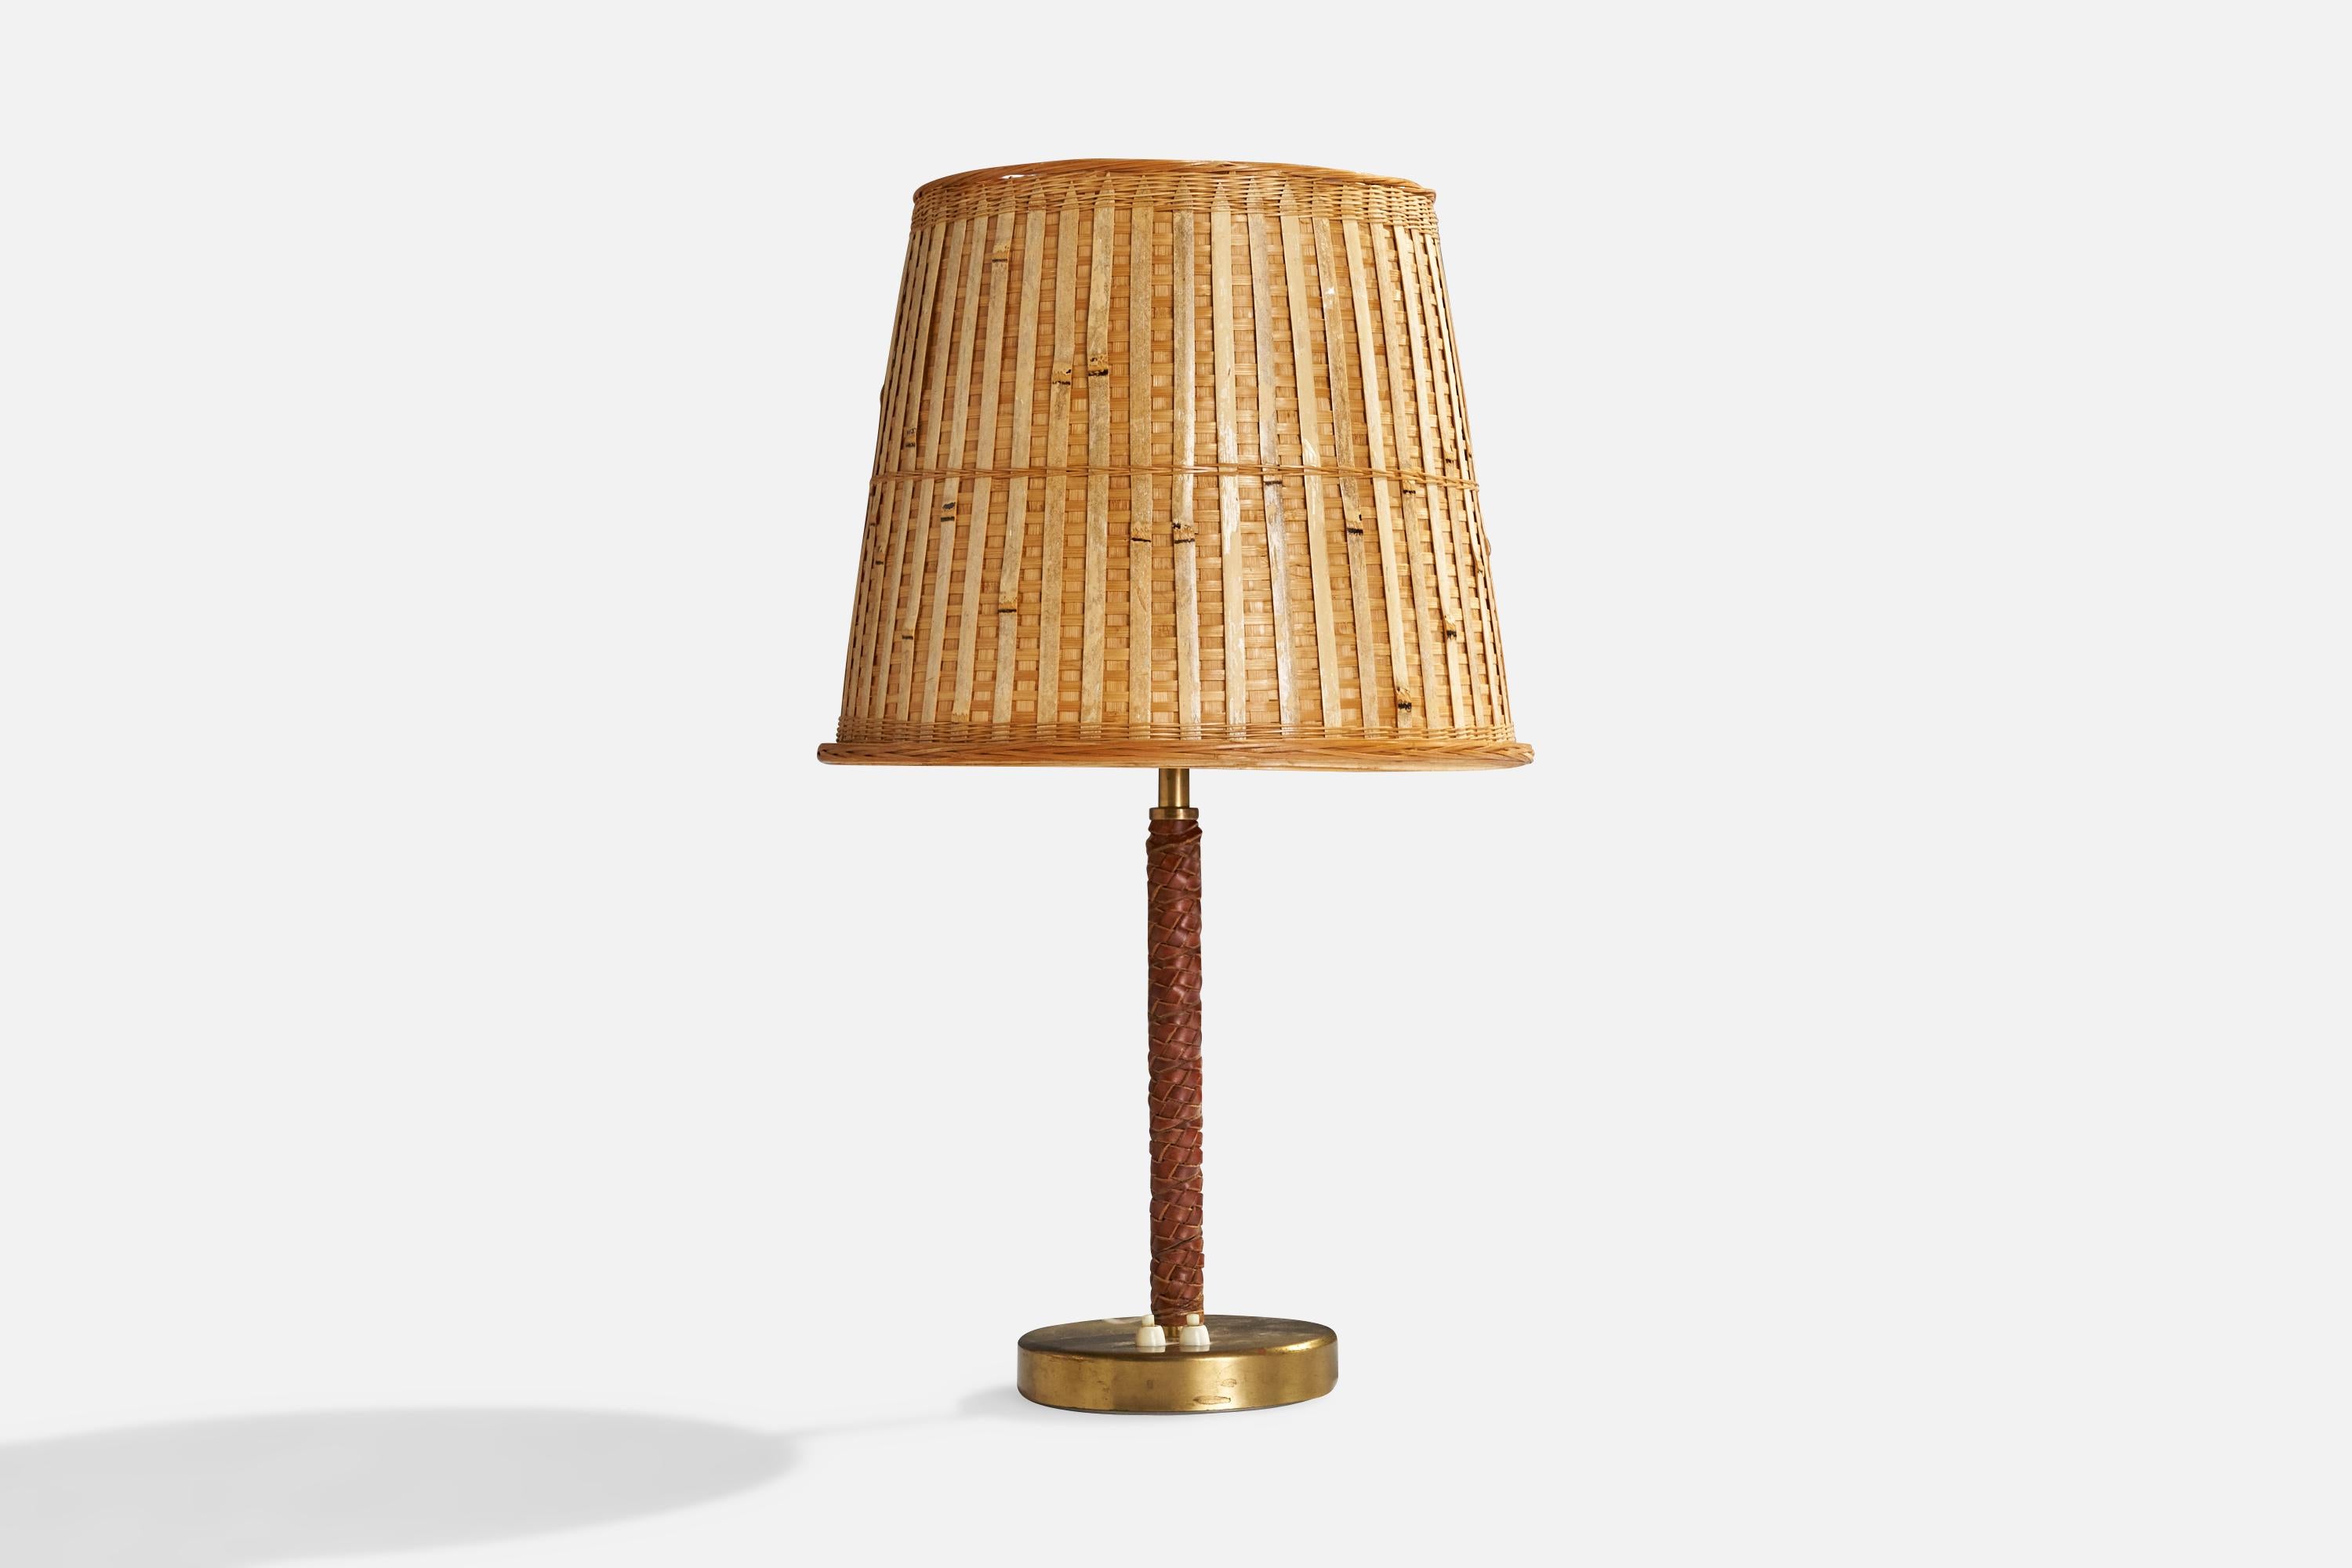 Lampe de table en cuir brun tressé, laiton et rotin, conçue par Bertil Brisborg et produite par Nordiska Kompaniet, Suède, années 1940.

Abat-jour en rotin vintage assorti.

Dimensions globales (pouces) : 24